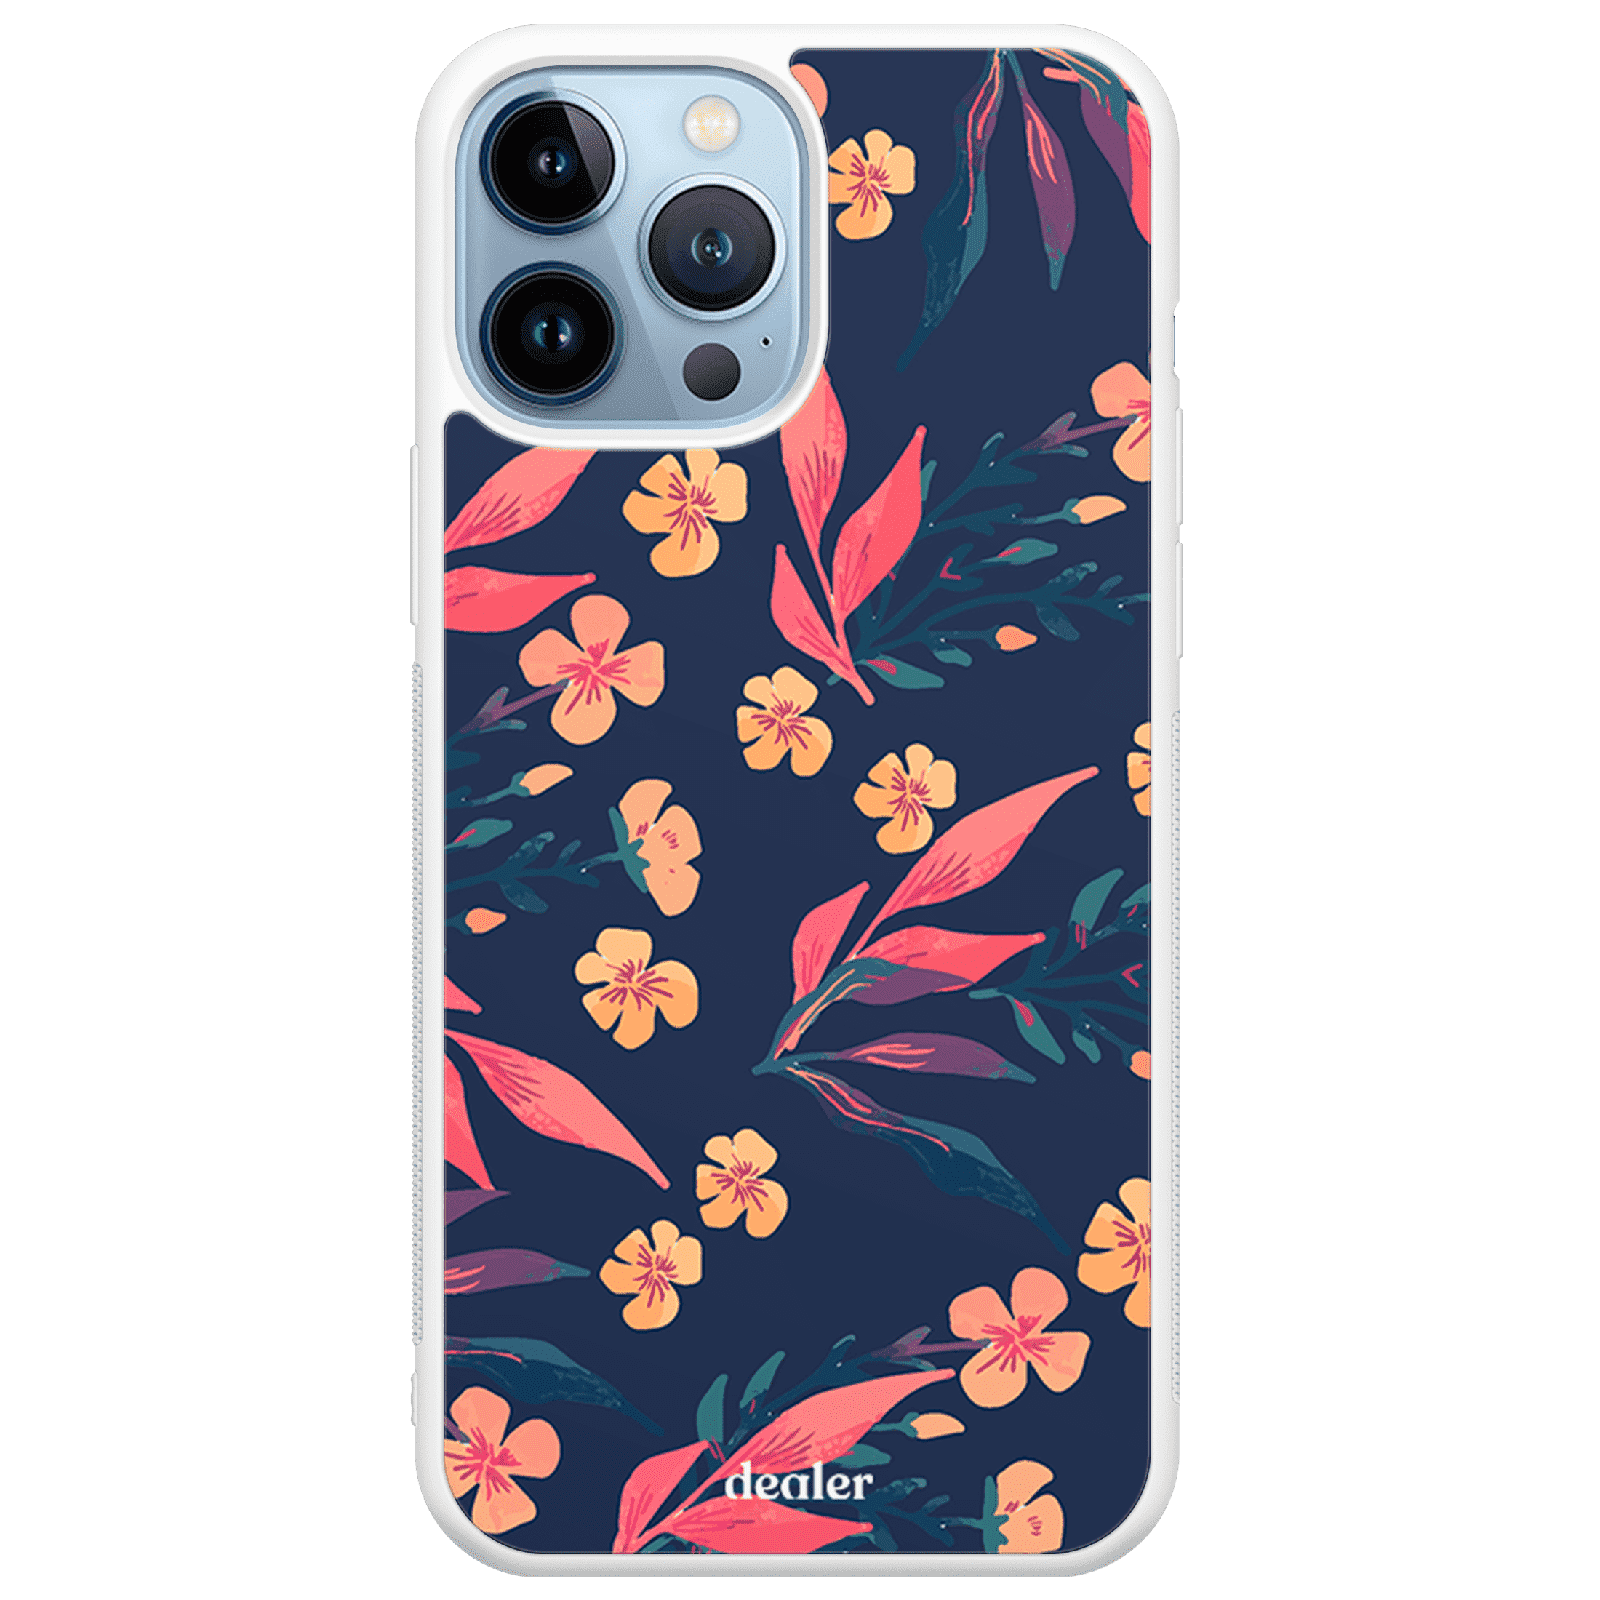 Coque de téléphone avec des fleurs colorées, coque fleur couleur silicone renforcé Dealer de coque